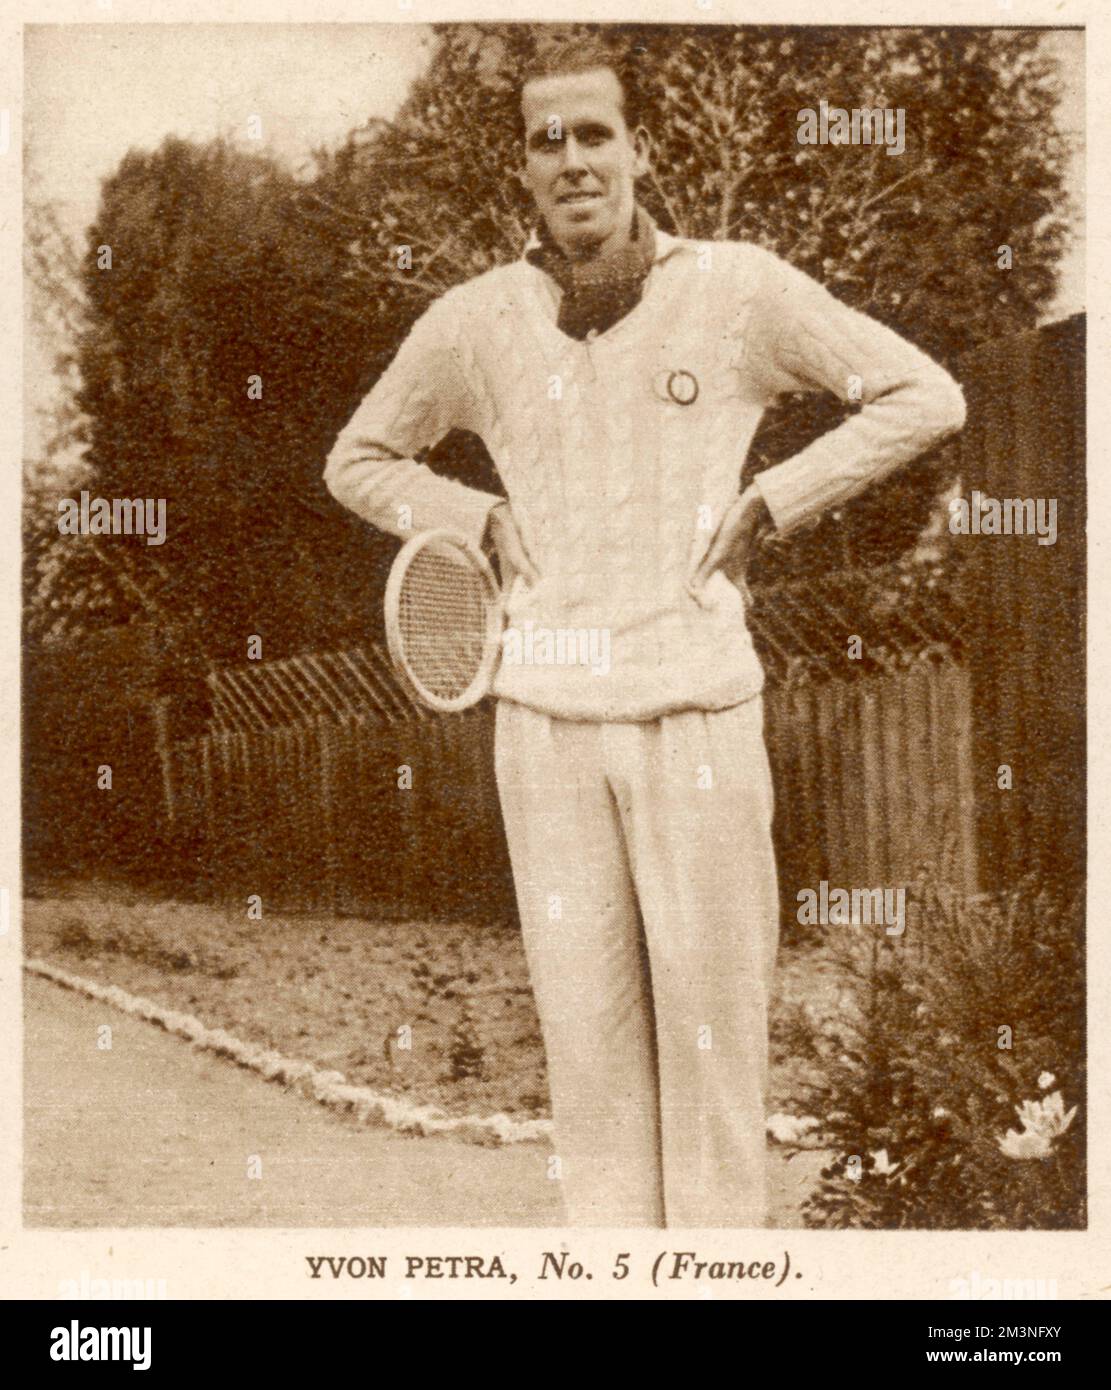 Yvon Petra (1916-1984), tenista francés, fotografiado aquí posando en sus blancos de tenis, antes de ganar el título de individuales masculinos de Wimbledon 1946. Fecha: 1946 Foto de stock